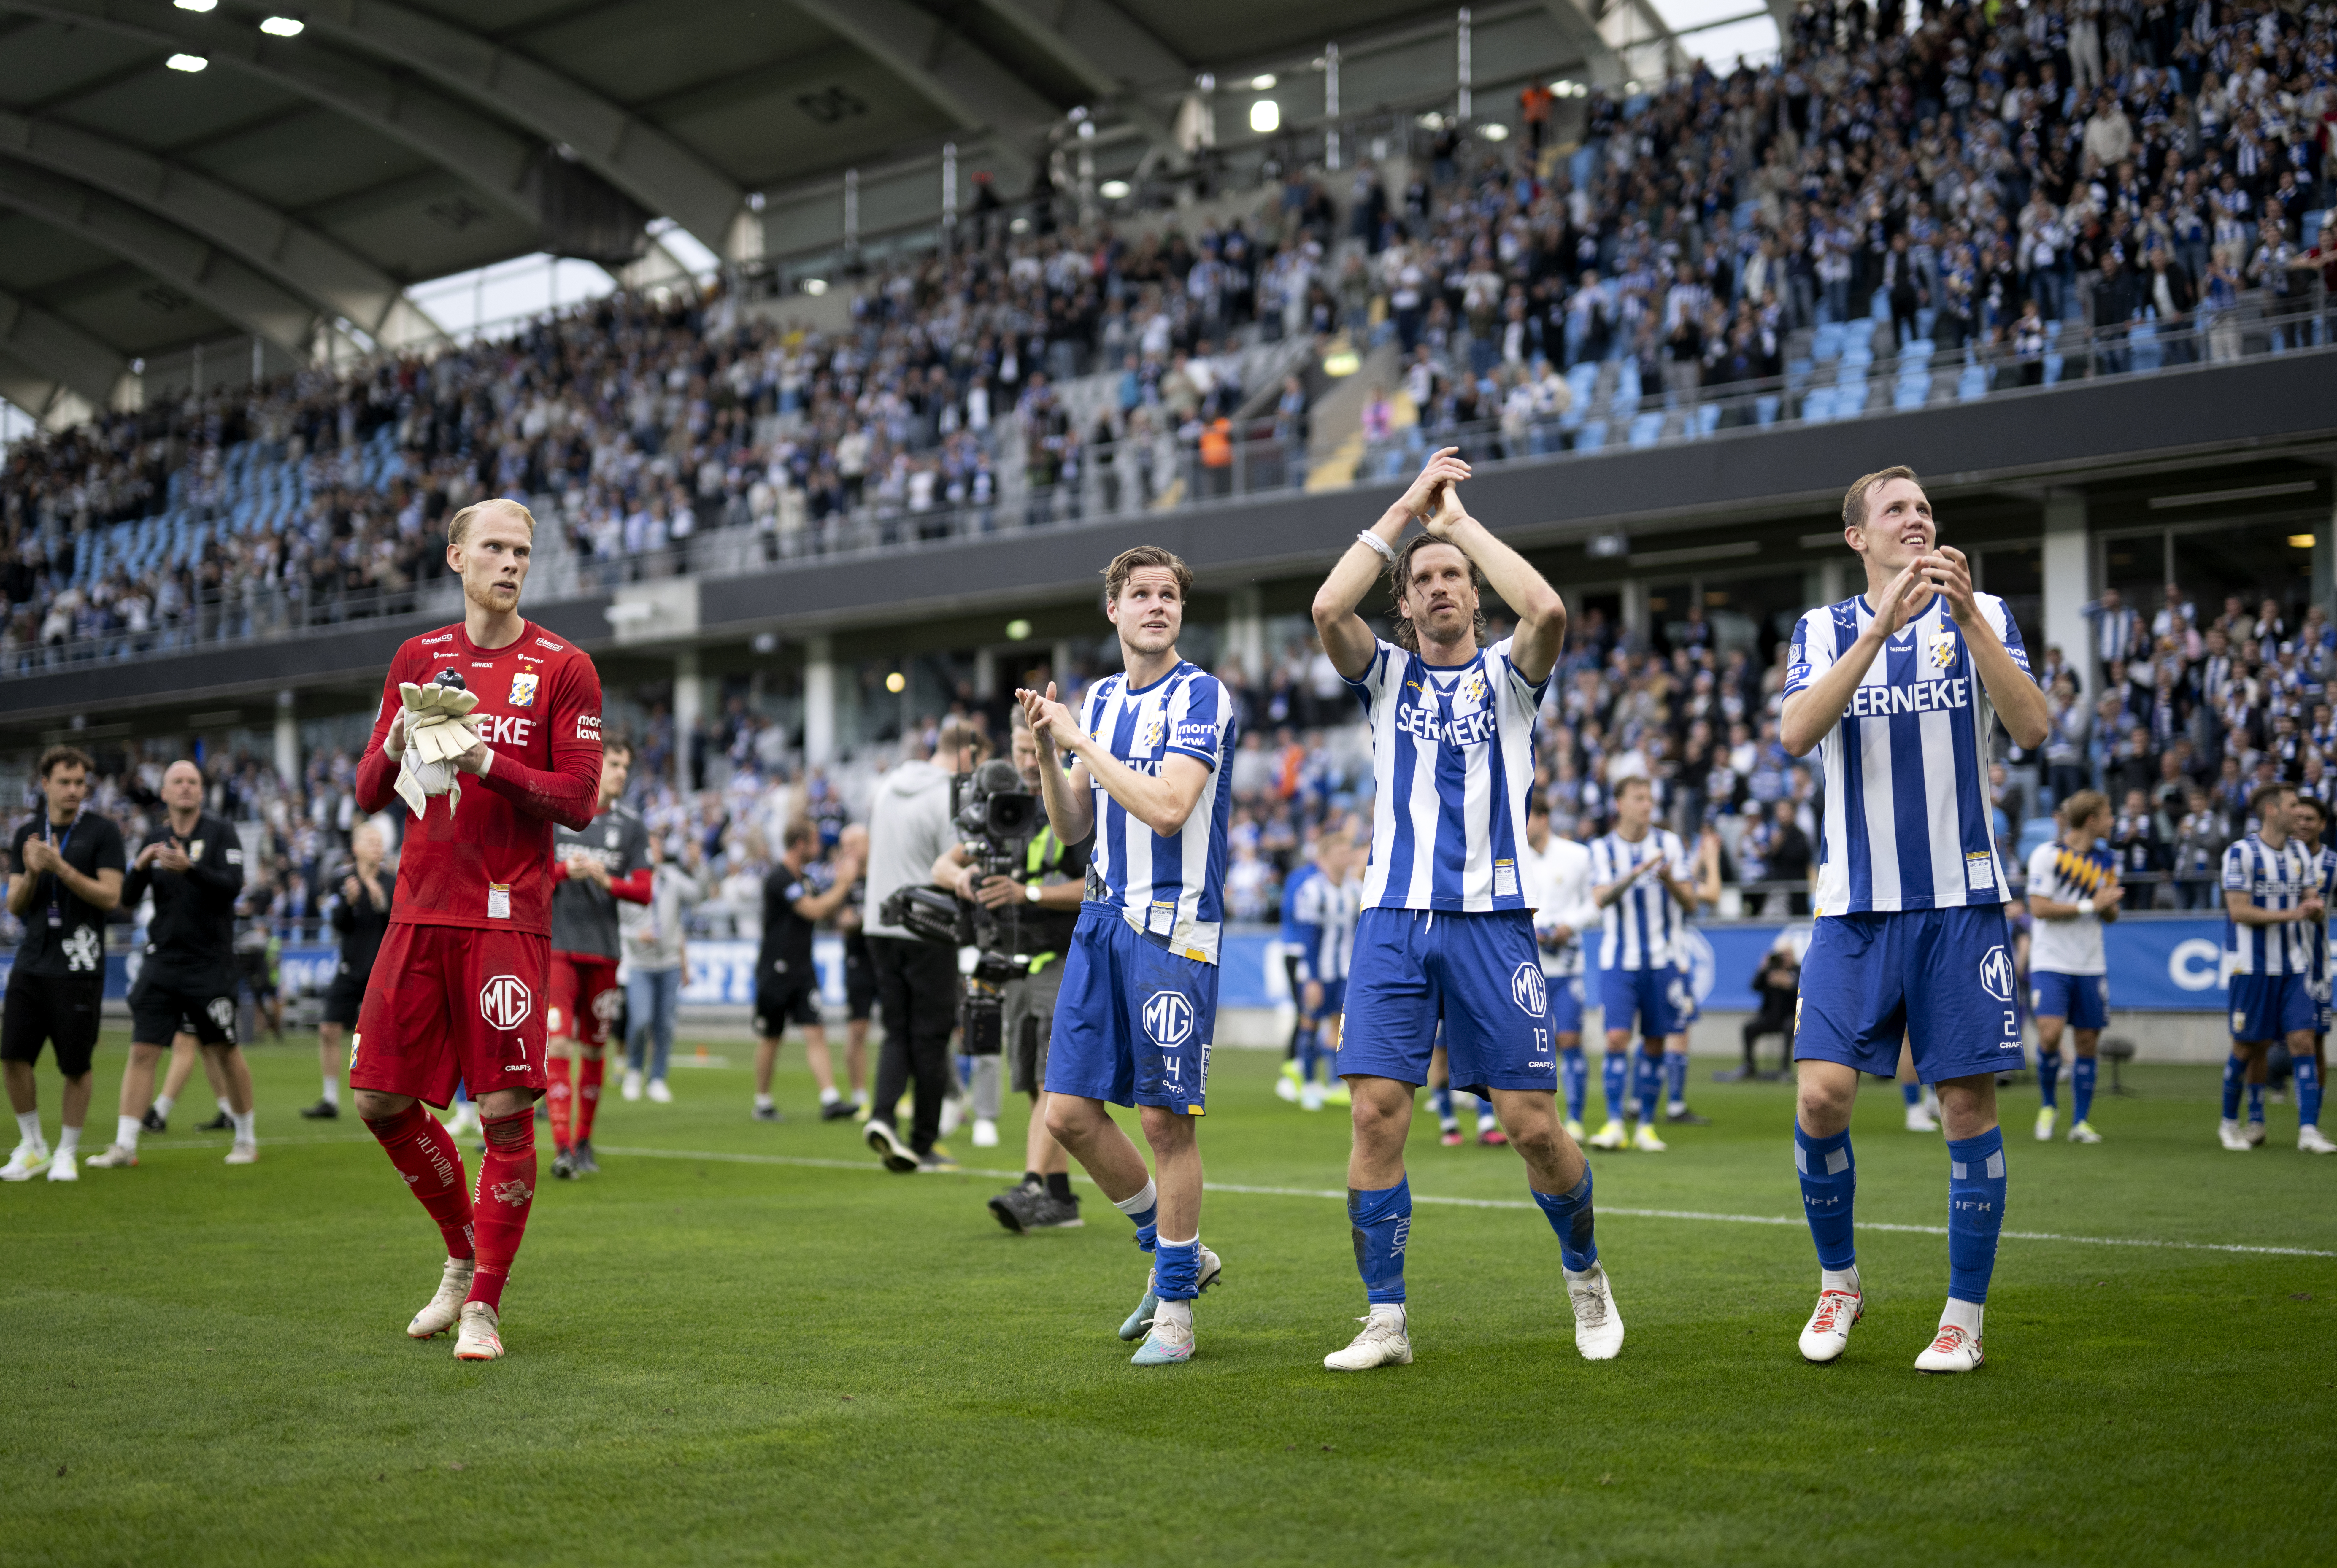 Nyheter24 har tittat närmare på vem som toppar IFK Göteborgs lönelista.